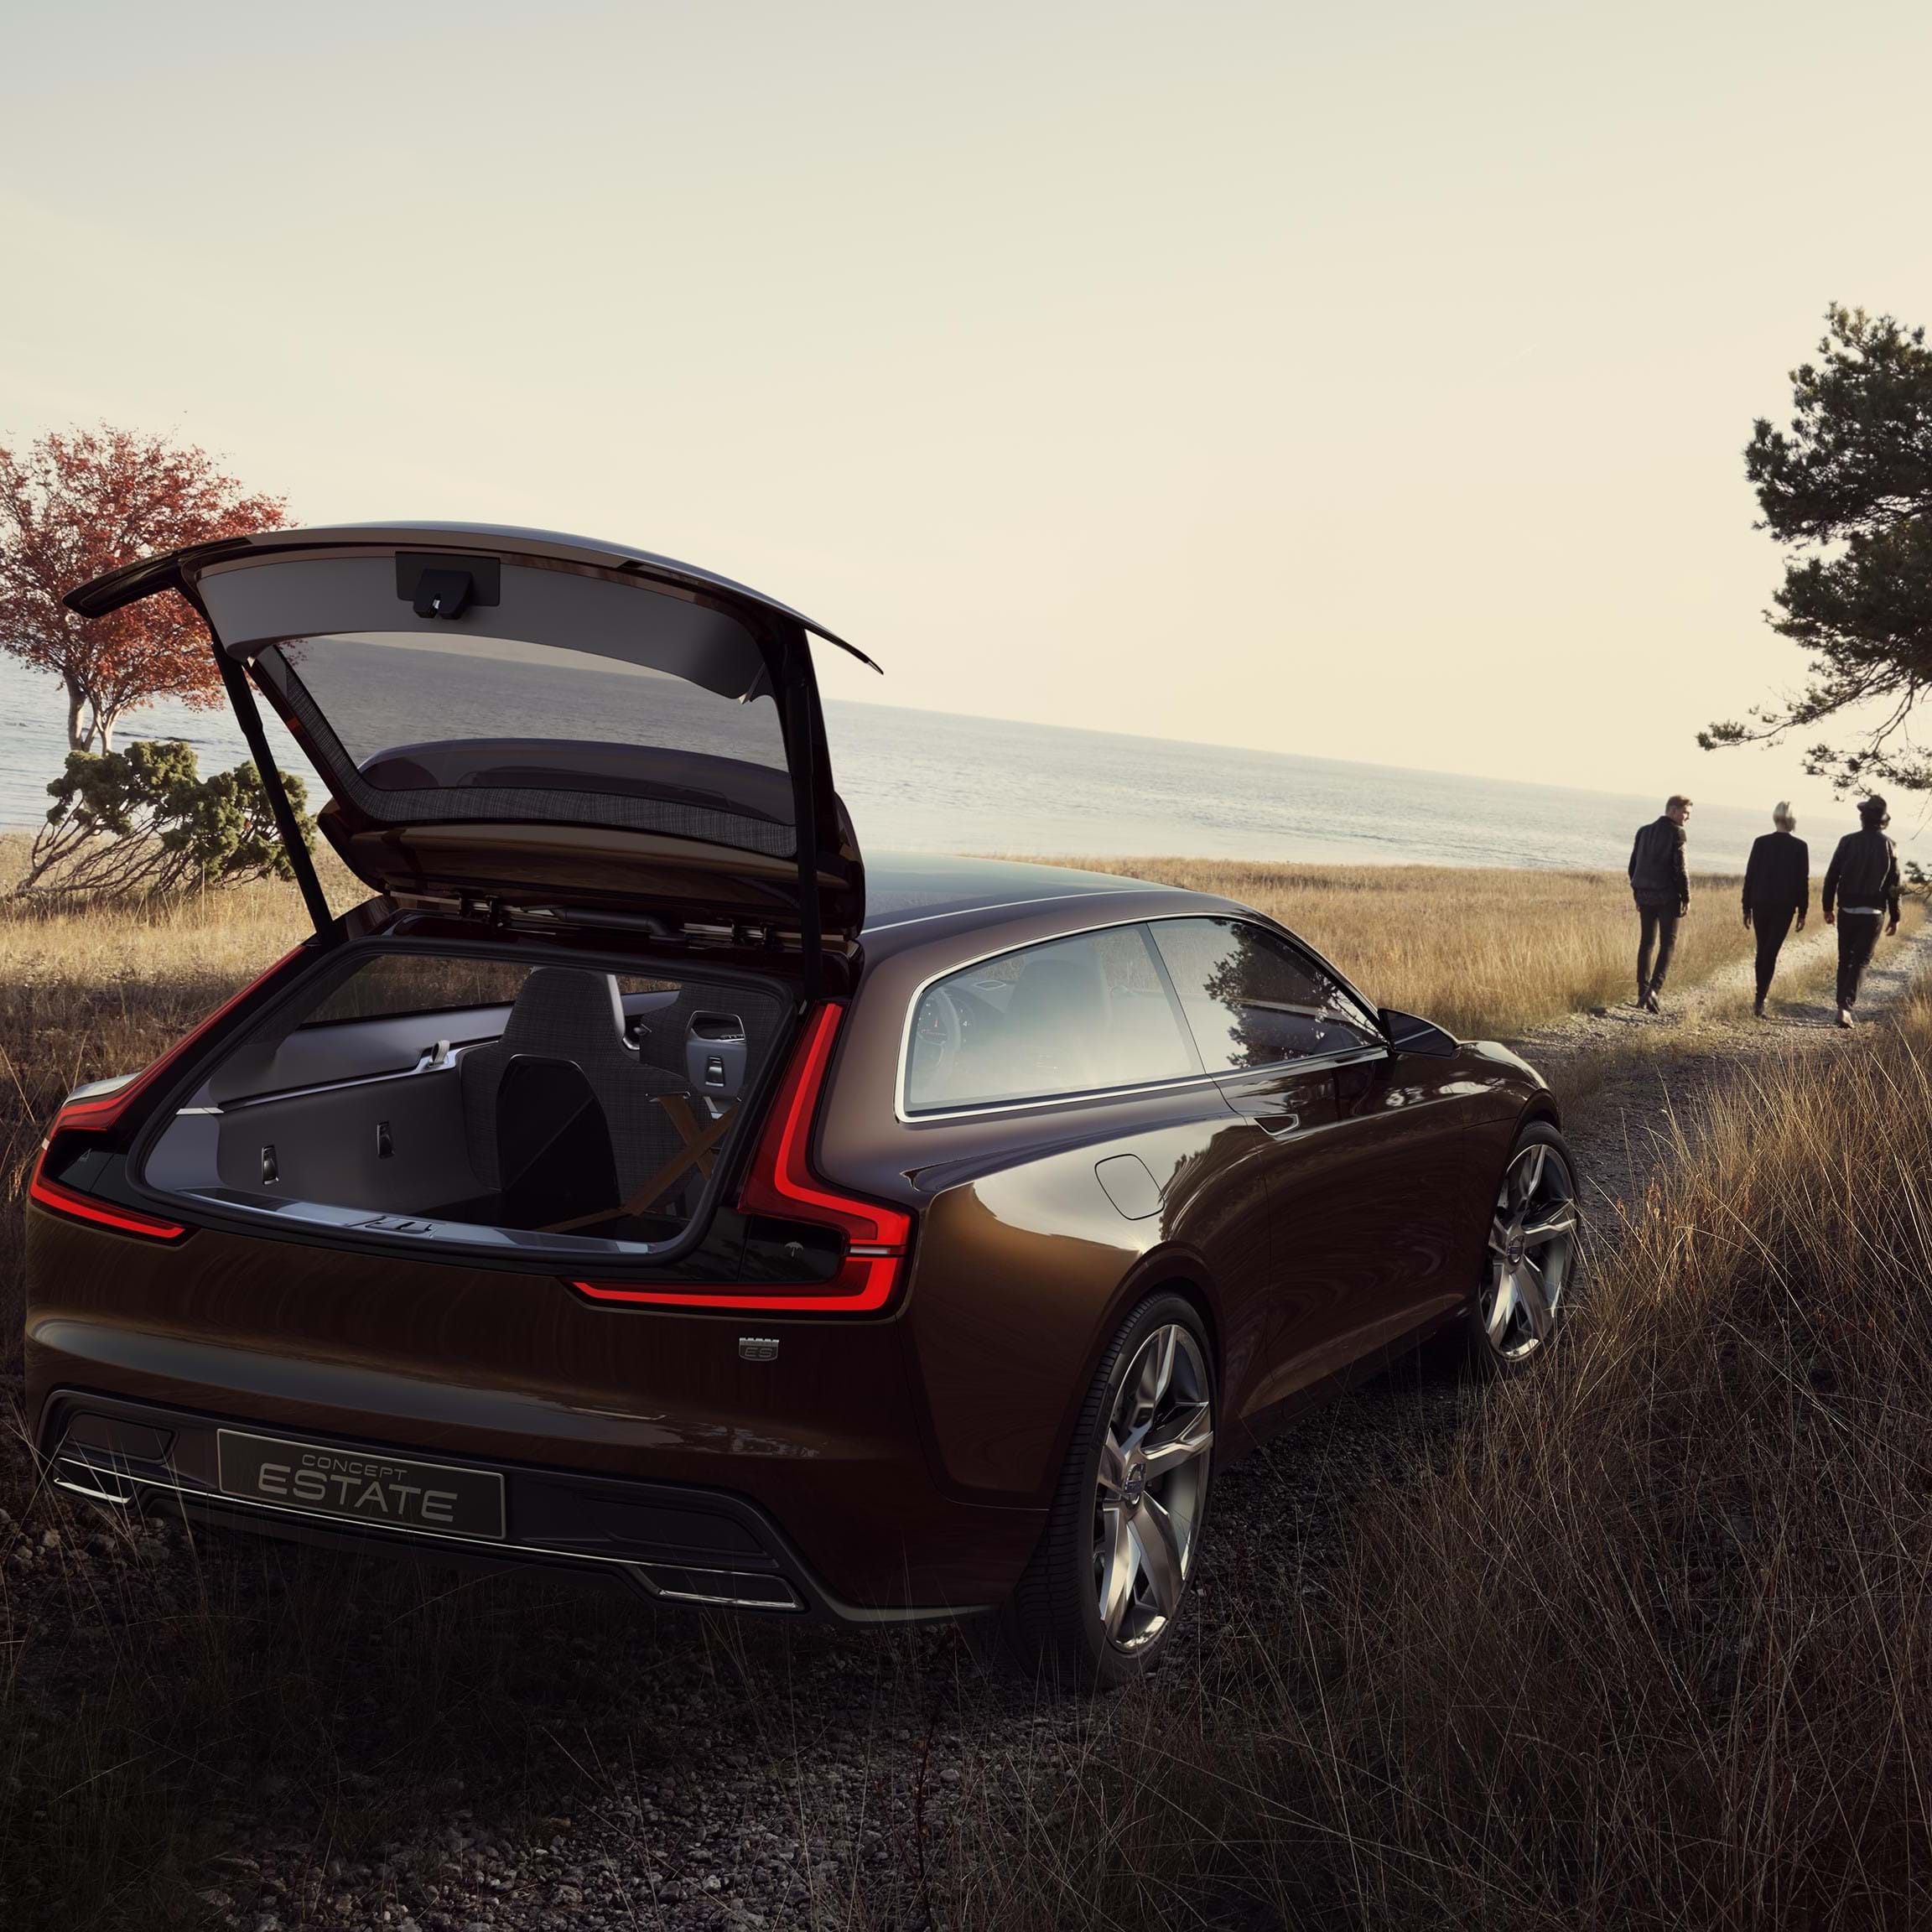 Concept Estate de Volvo con el maletero abierto aparcado en una carretera rural